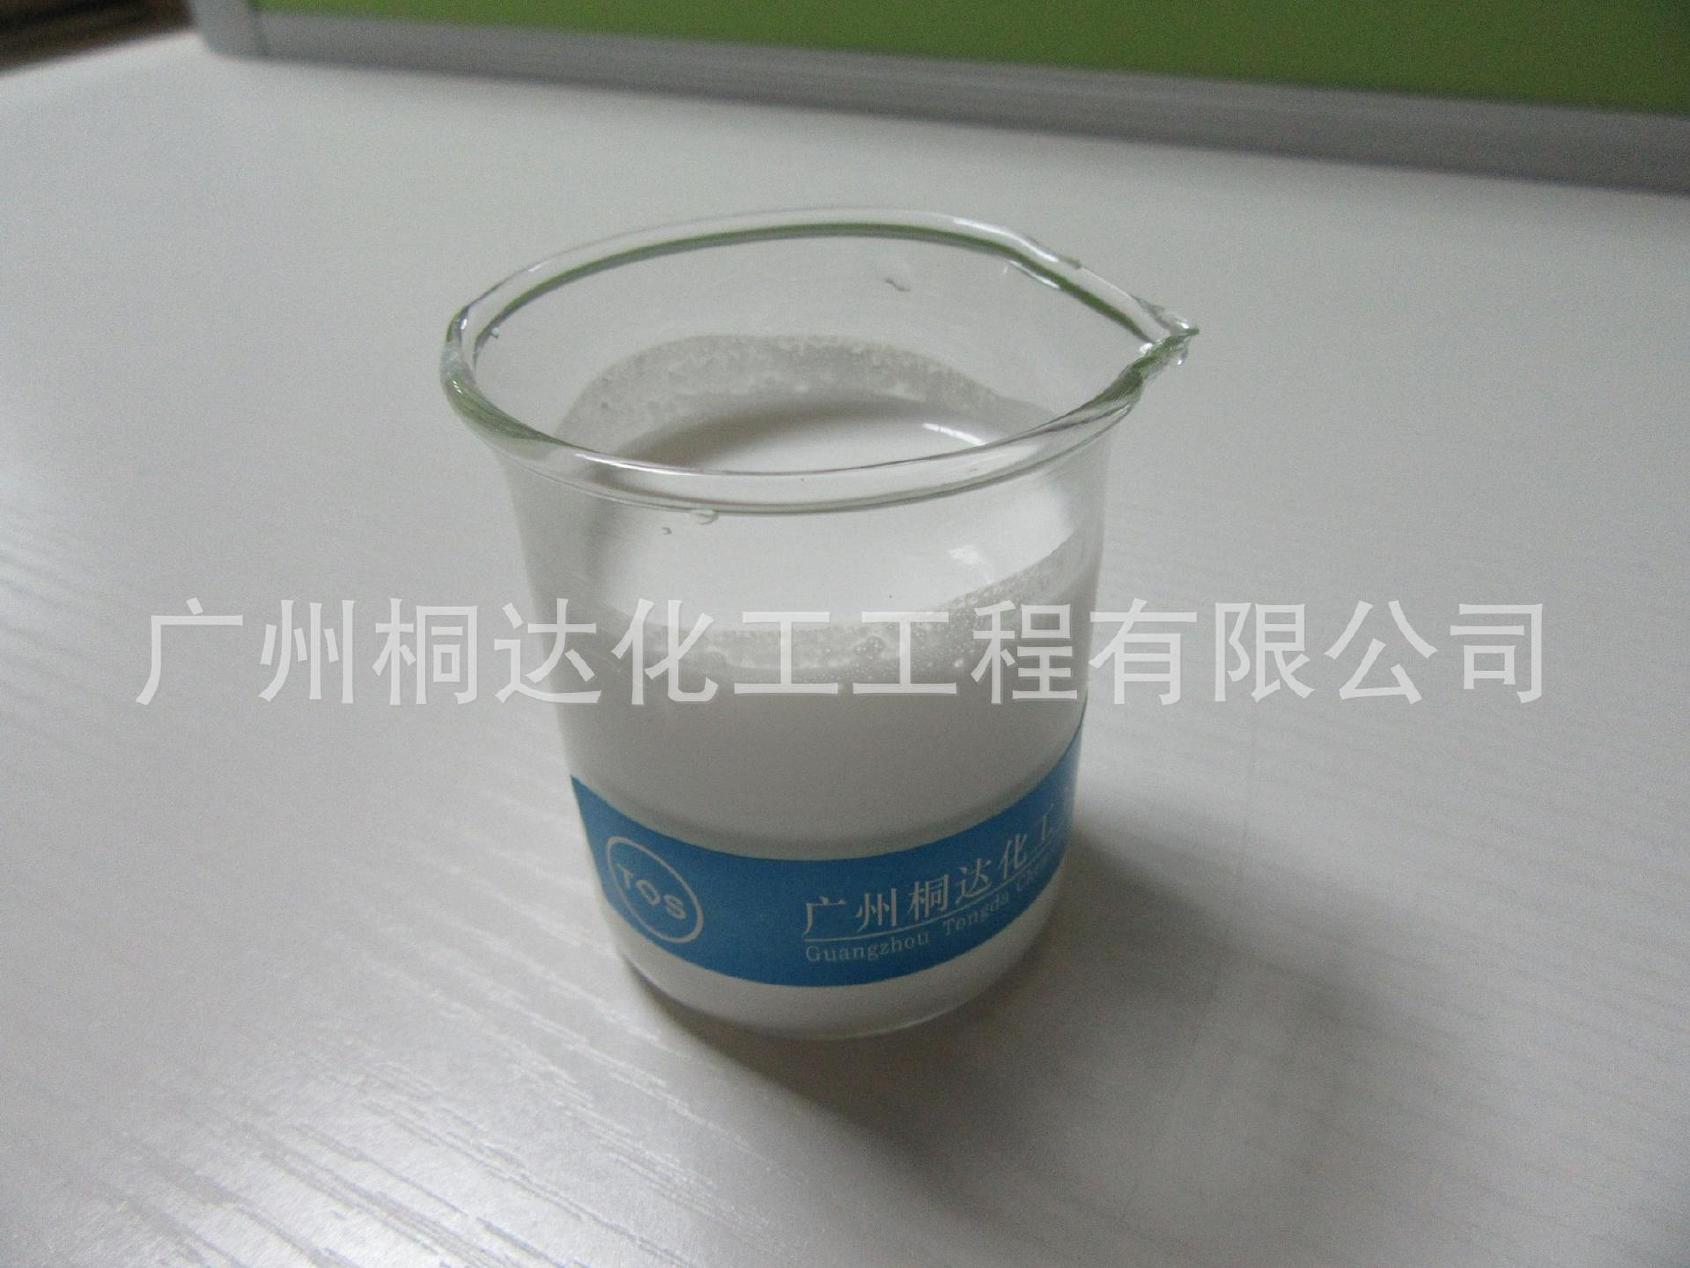 RRJ-211 柔软剂、织物超蓬松柔软剂 适用于纯棉、涤纶、涤棉等示例图2